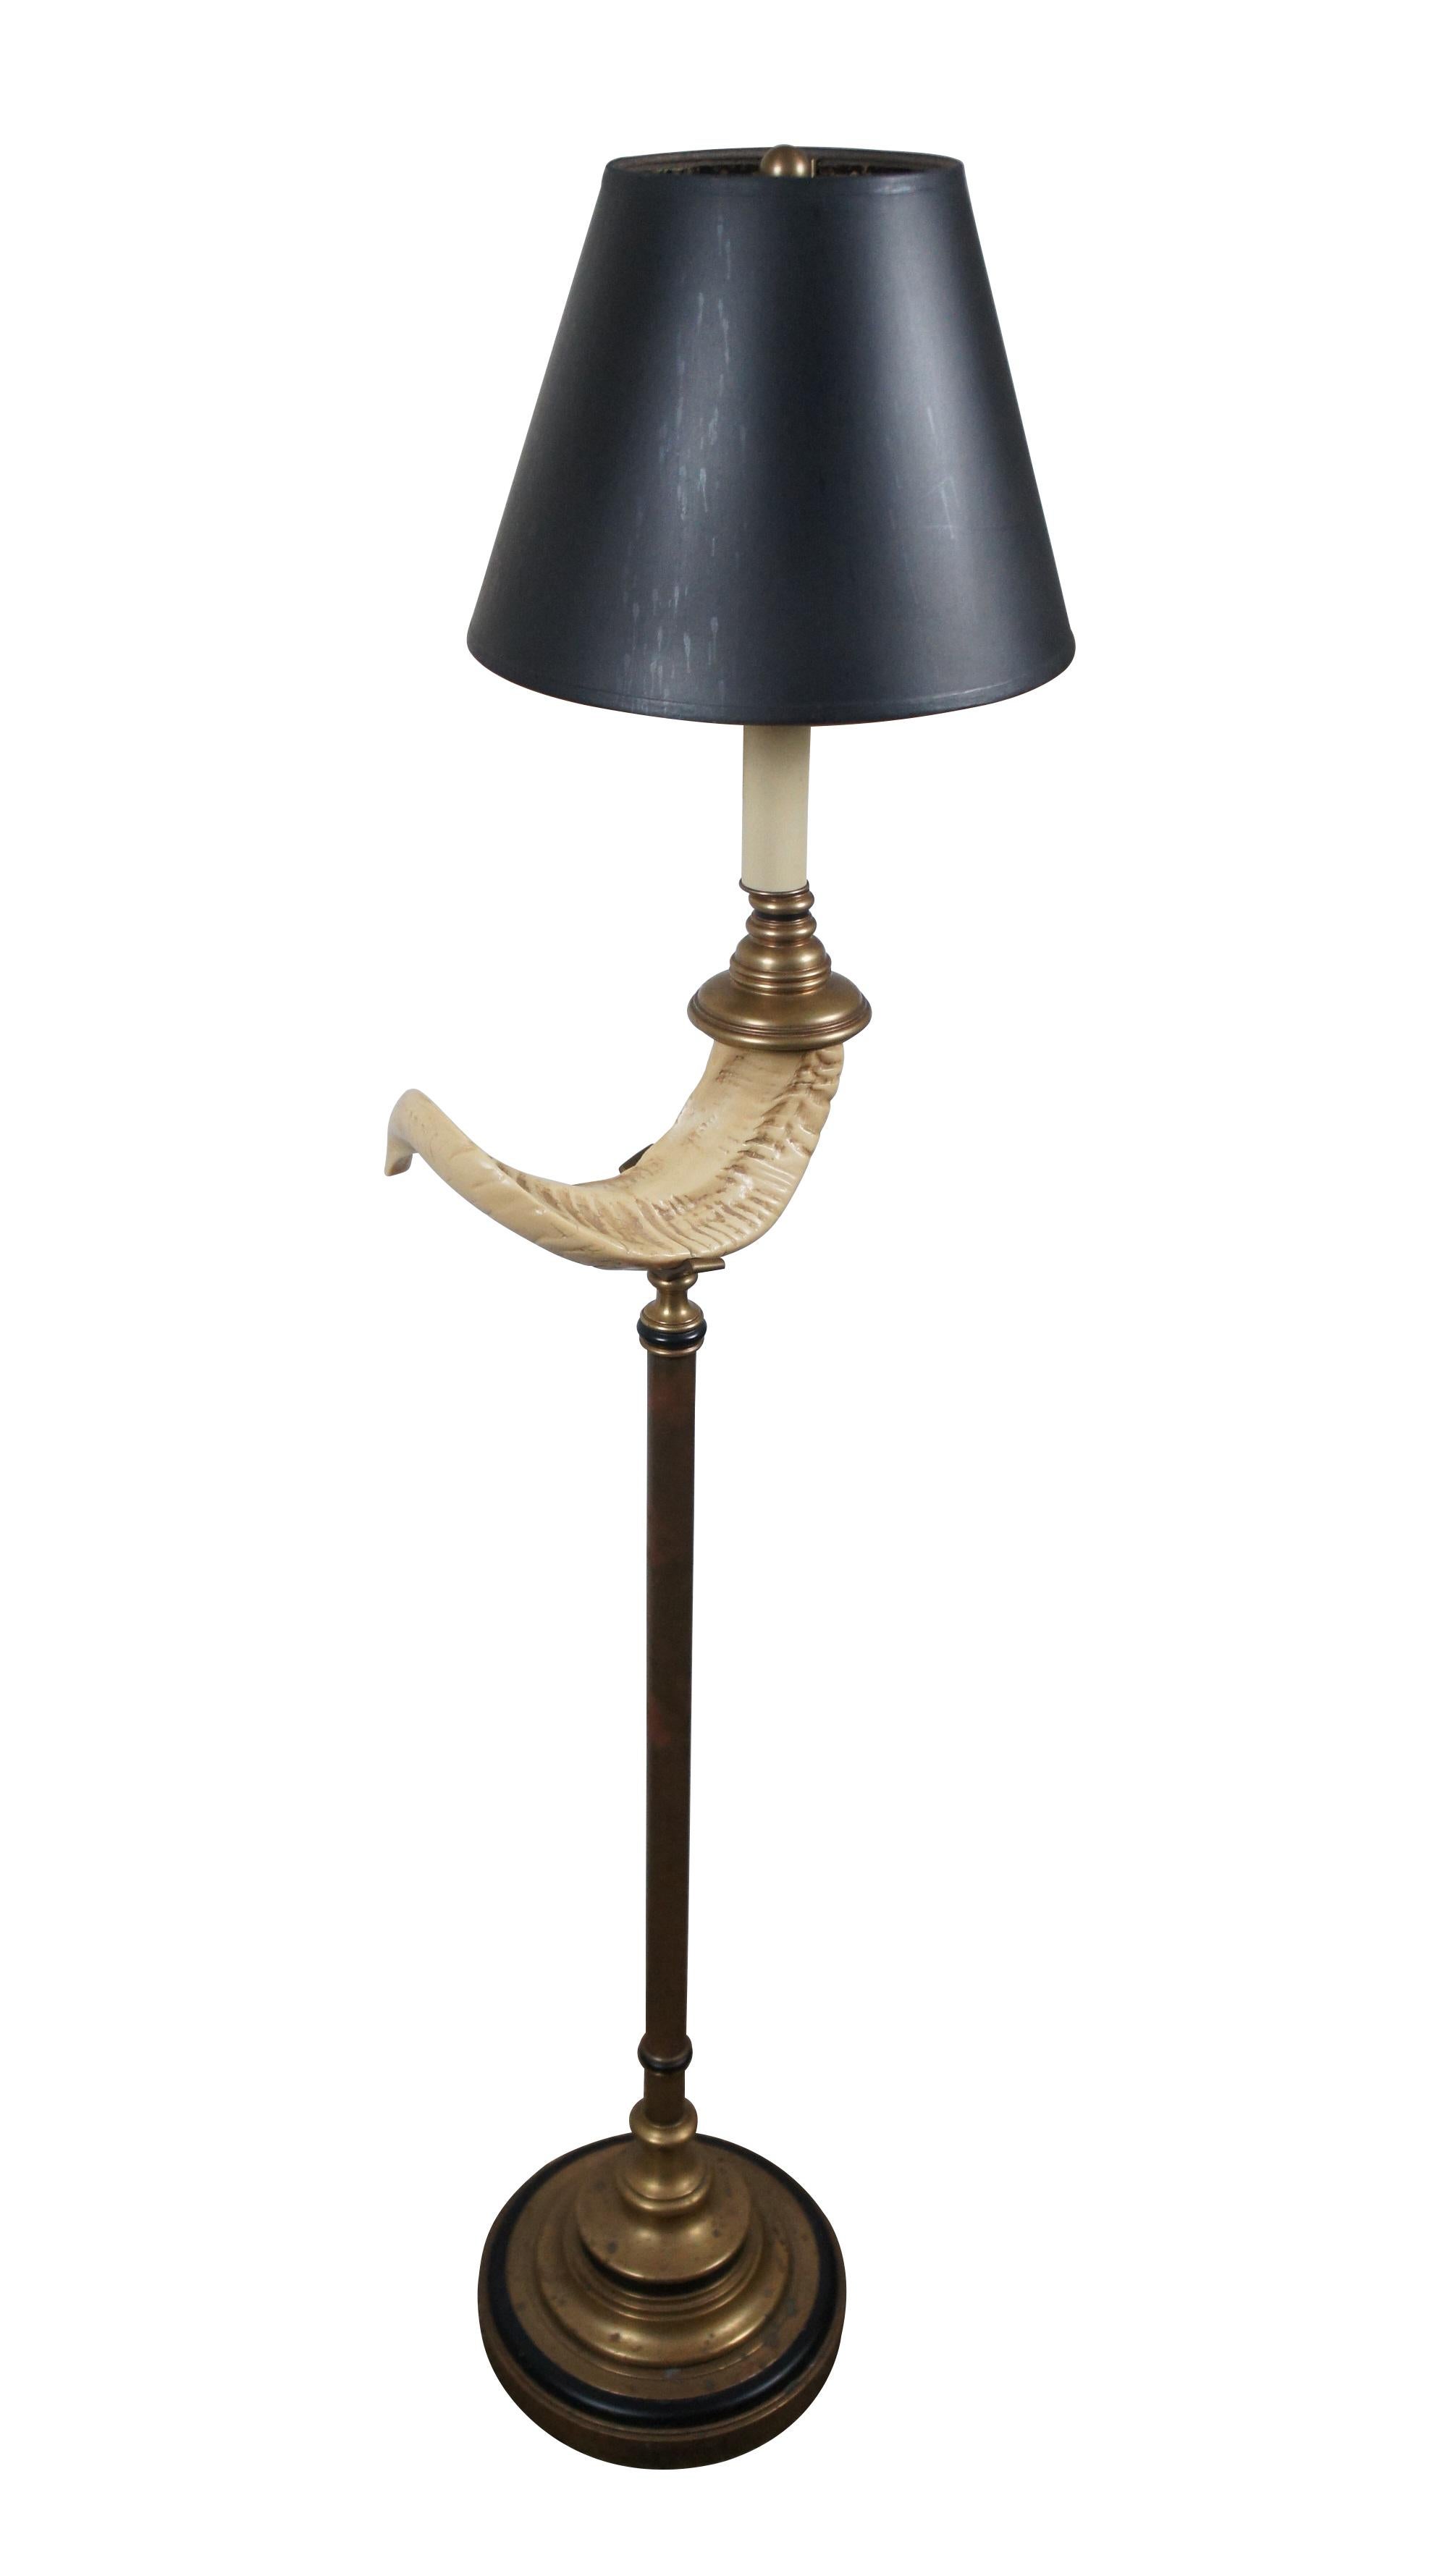 Lampadaire Chapman en laiton datant des années 1970, caractérisé par une base ronde à piédestal étagé et une corne de bélier artificielle perchée sur le corps de la colonne avec des accents noirs, menant à un faux chandelier sur le dessus. Abat-jour